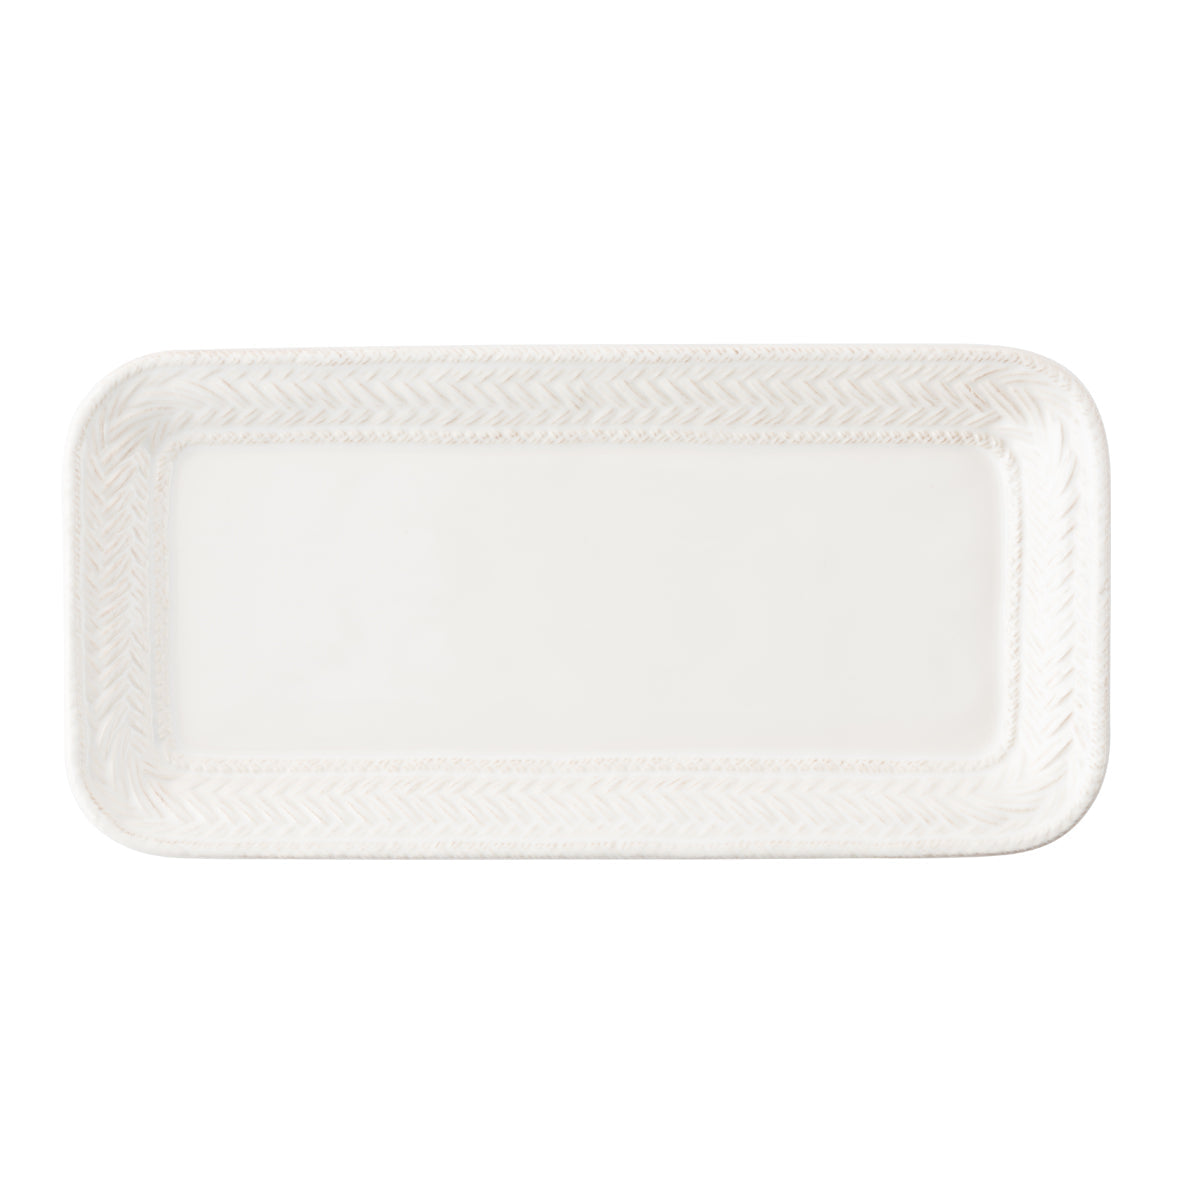 le panier whitewash hostess tray on a white background